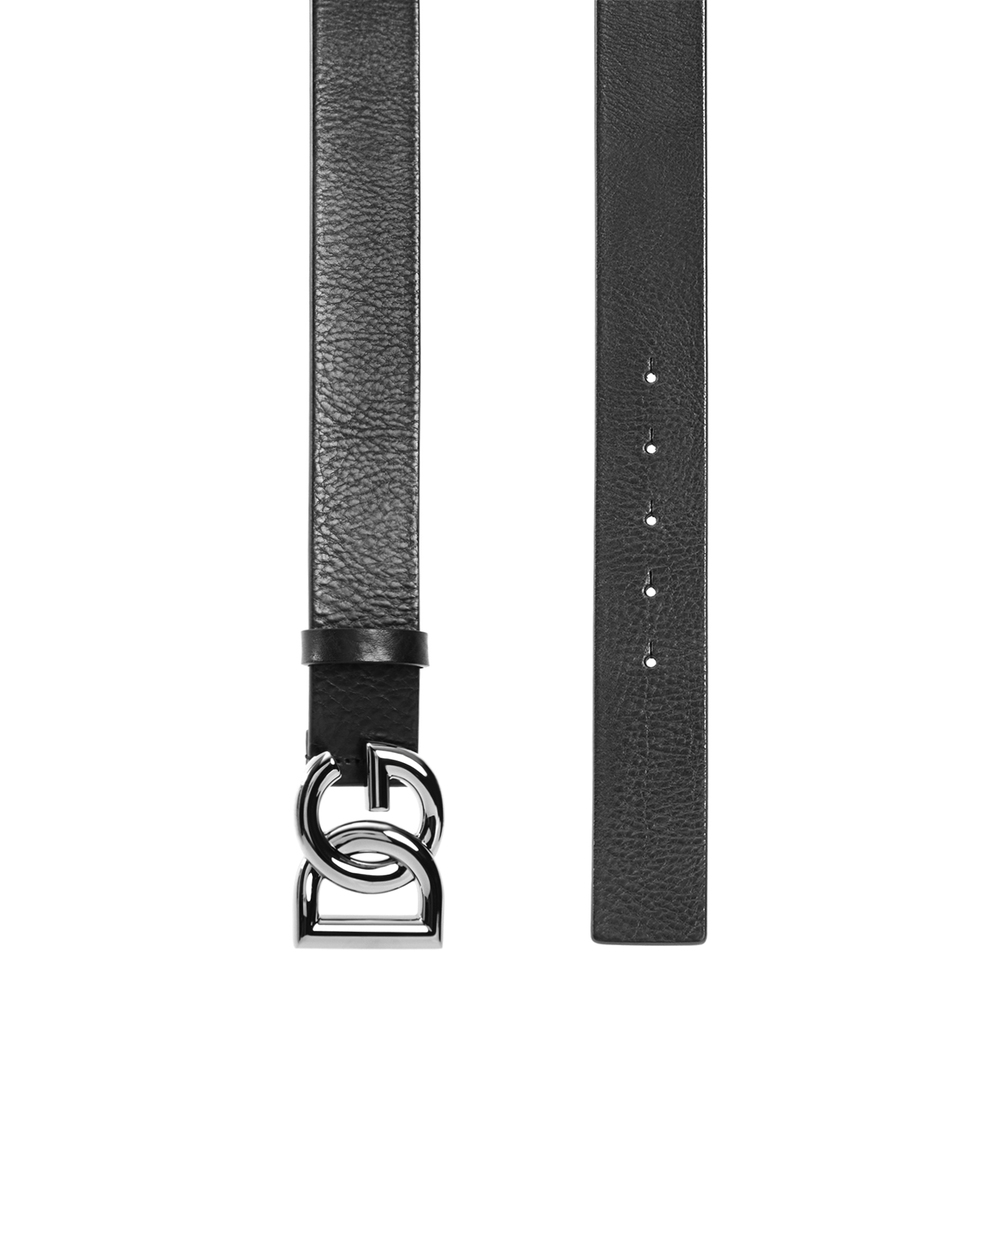 Кожаный ремень Dolce&Gabbana BC4630-AV480, черный цвет • Купить в интернет-магазине Kameron